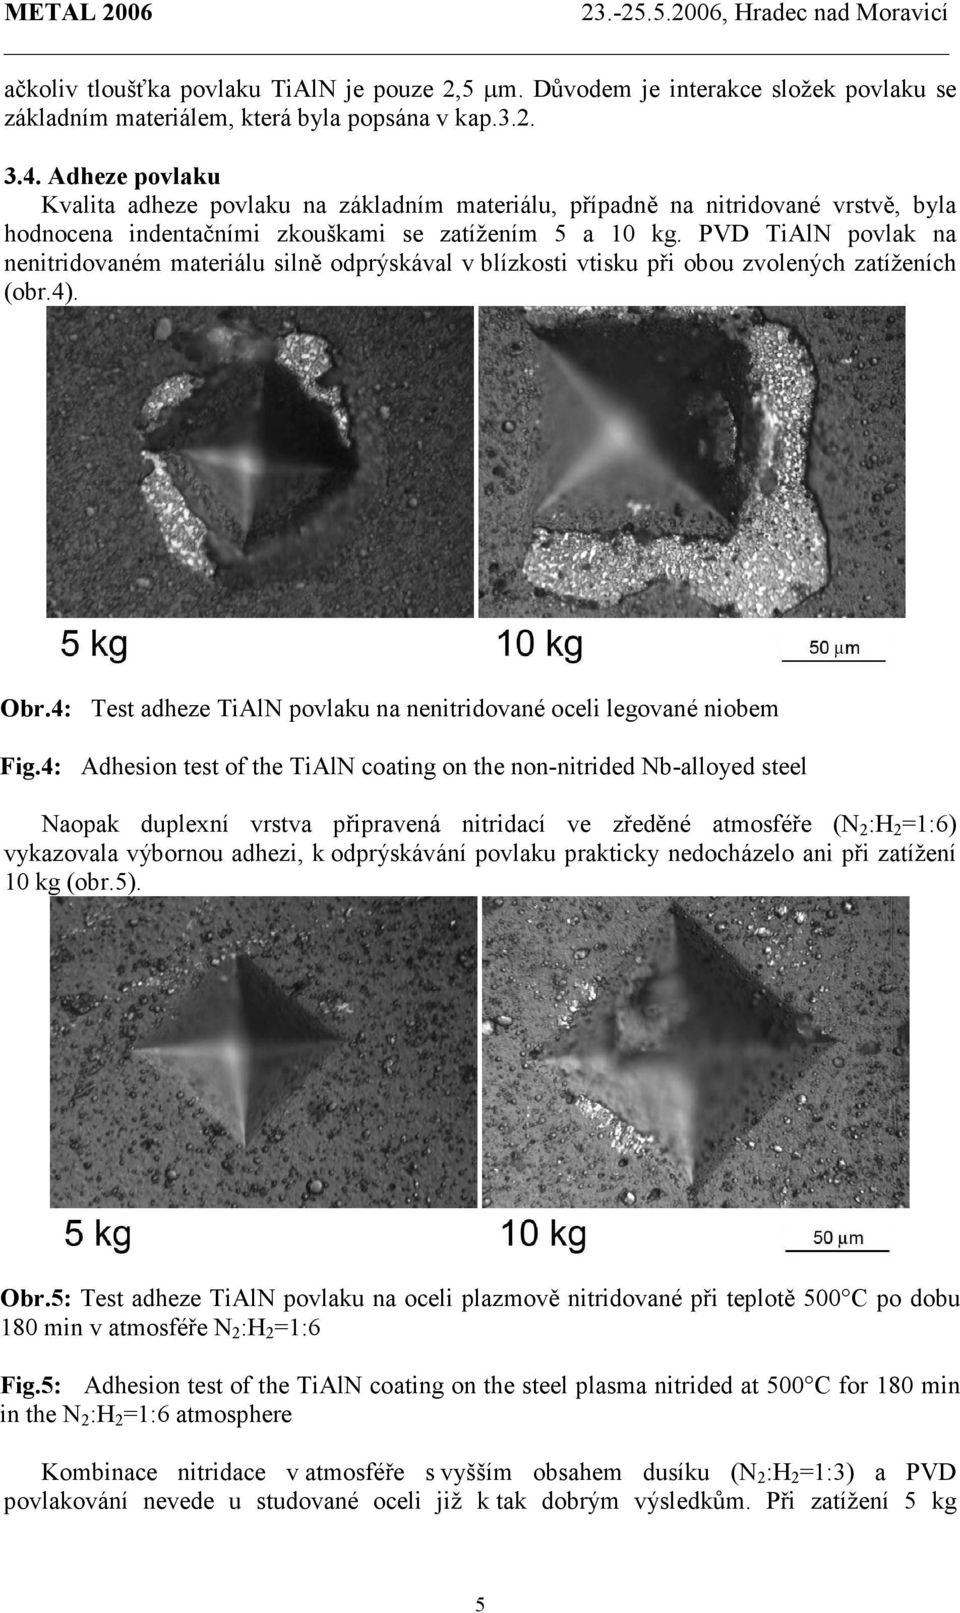 PVD TiAlN povlak na nenitridovaném materiálu silně odprýskával v blízkosti vtisku při obou zvolených zatíženích (obr.4). Obr.4: Test adheze TiAlN povlaku na nenitridované oceli legované niobem Fig.